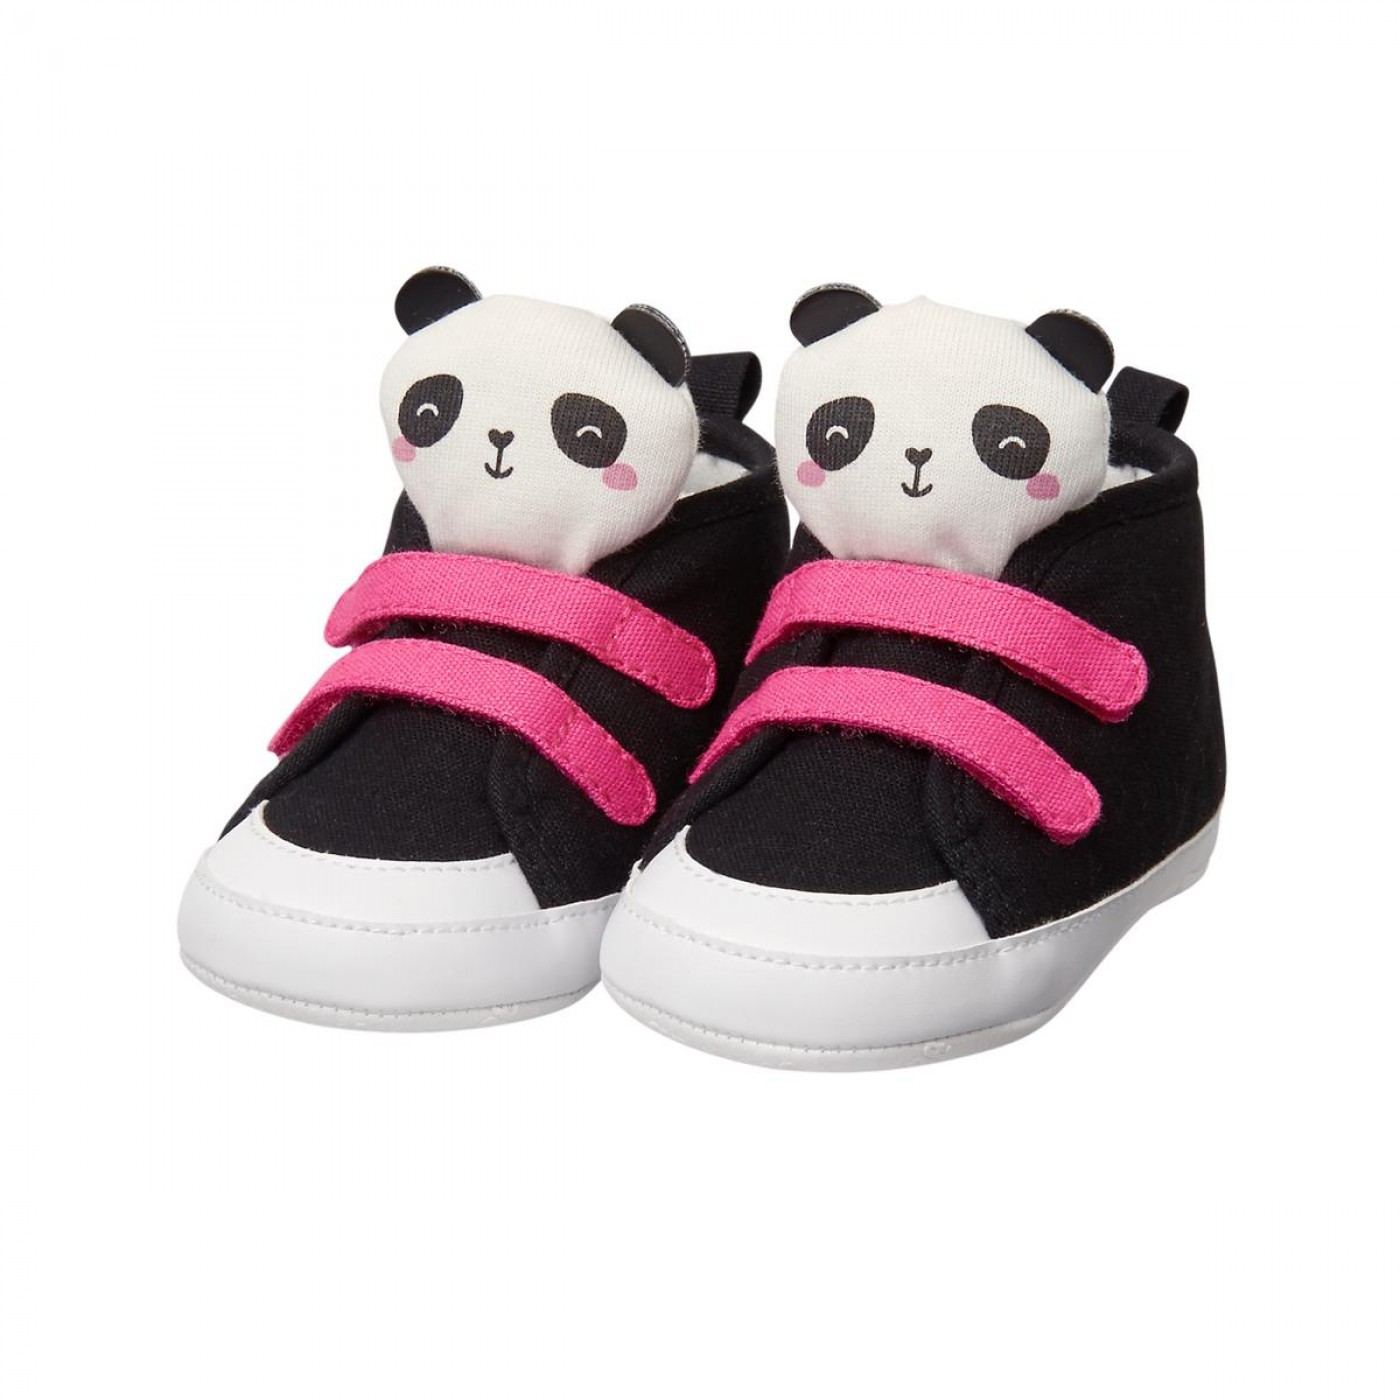 立體熊貓魔鬼氈布鞋